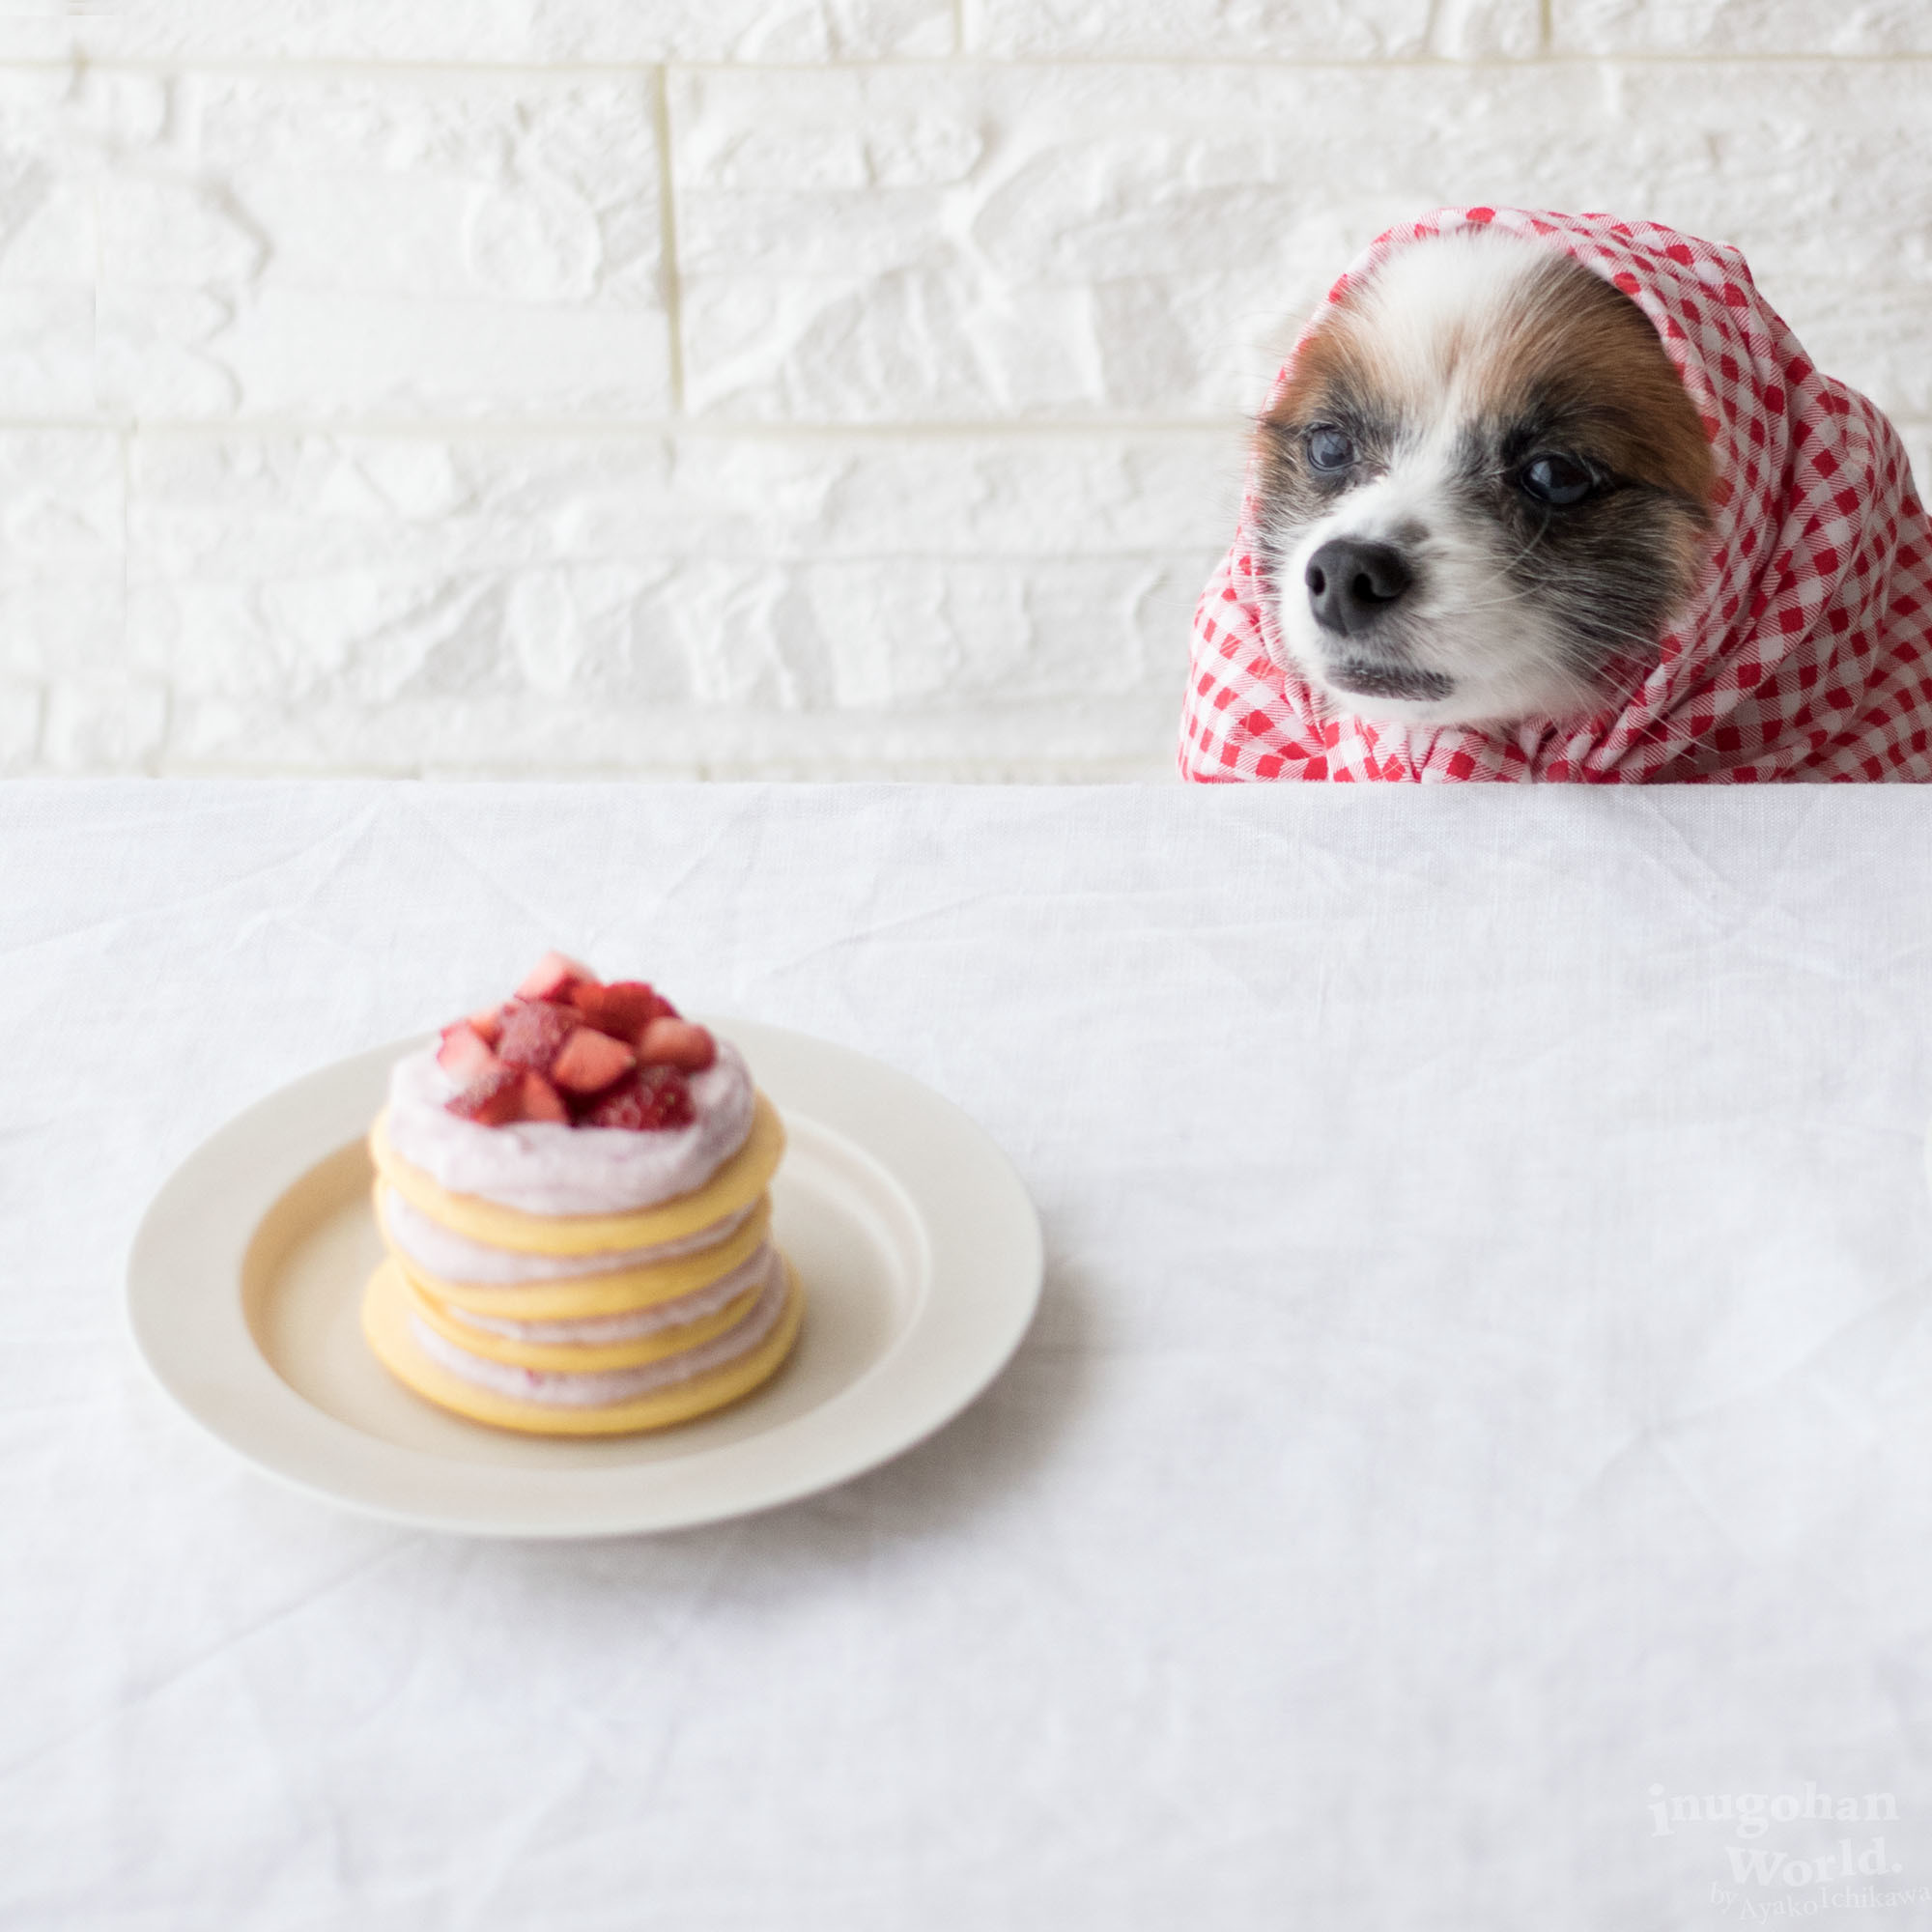 ストロベリークリームのデコレーションパンケーキ 手作り犬おやつレシピ 犬ごはん先生いちかわあやこ Official Web Site